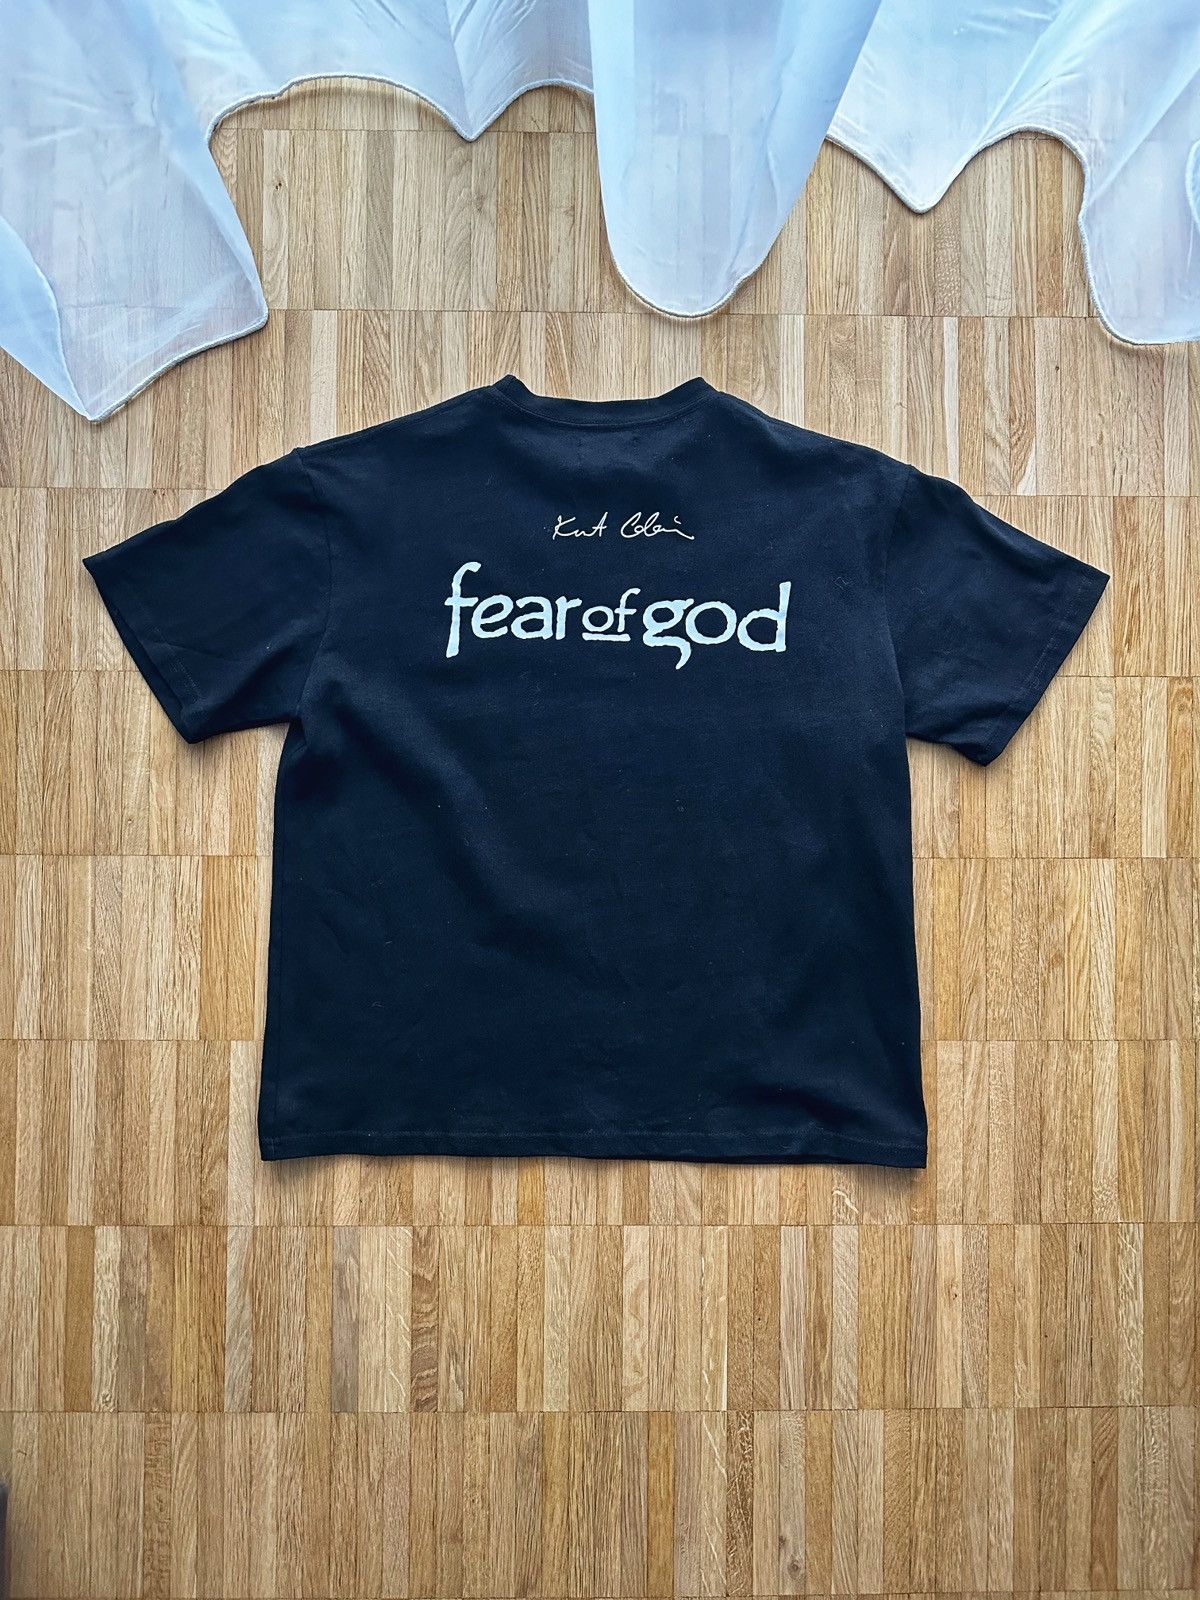 Nirvana FEAR OF GOD 4TH KURT COBAIN | Grailed